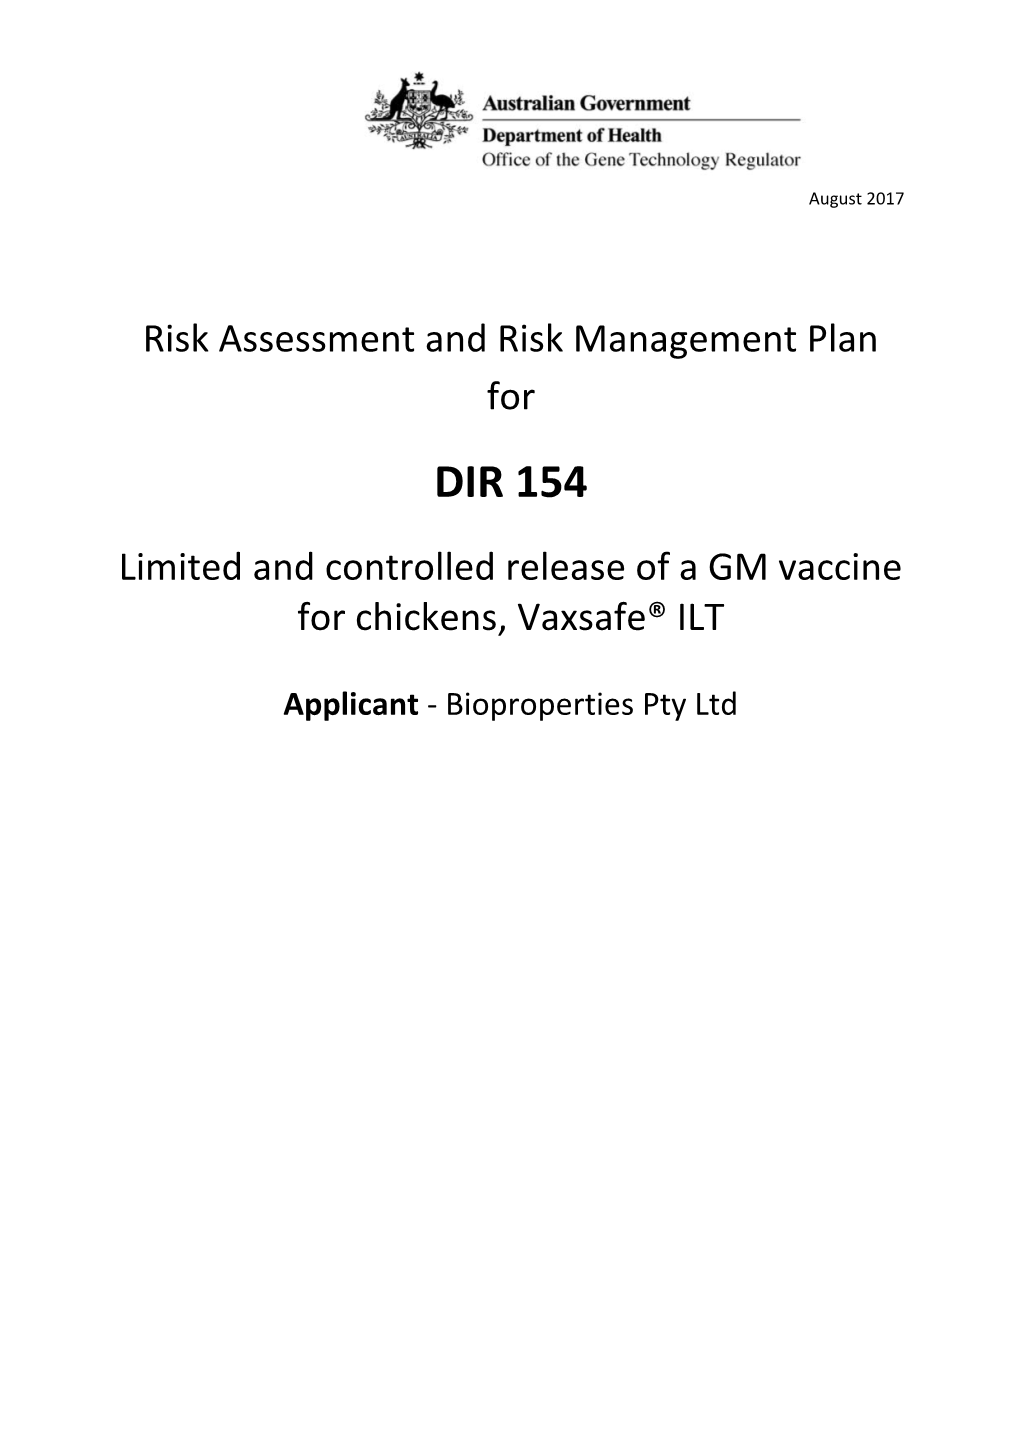 DIR 154 - Full Risk Assessment and Risk Management Plan